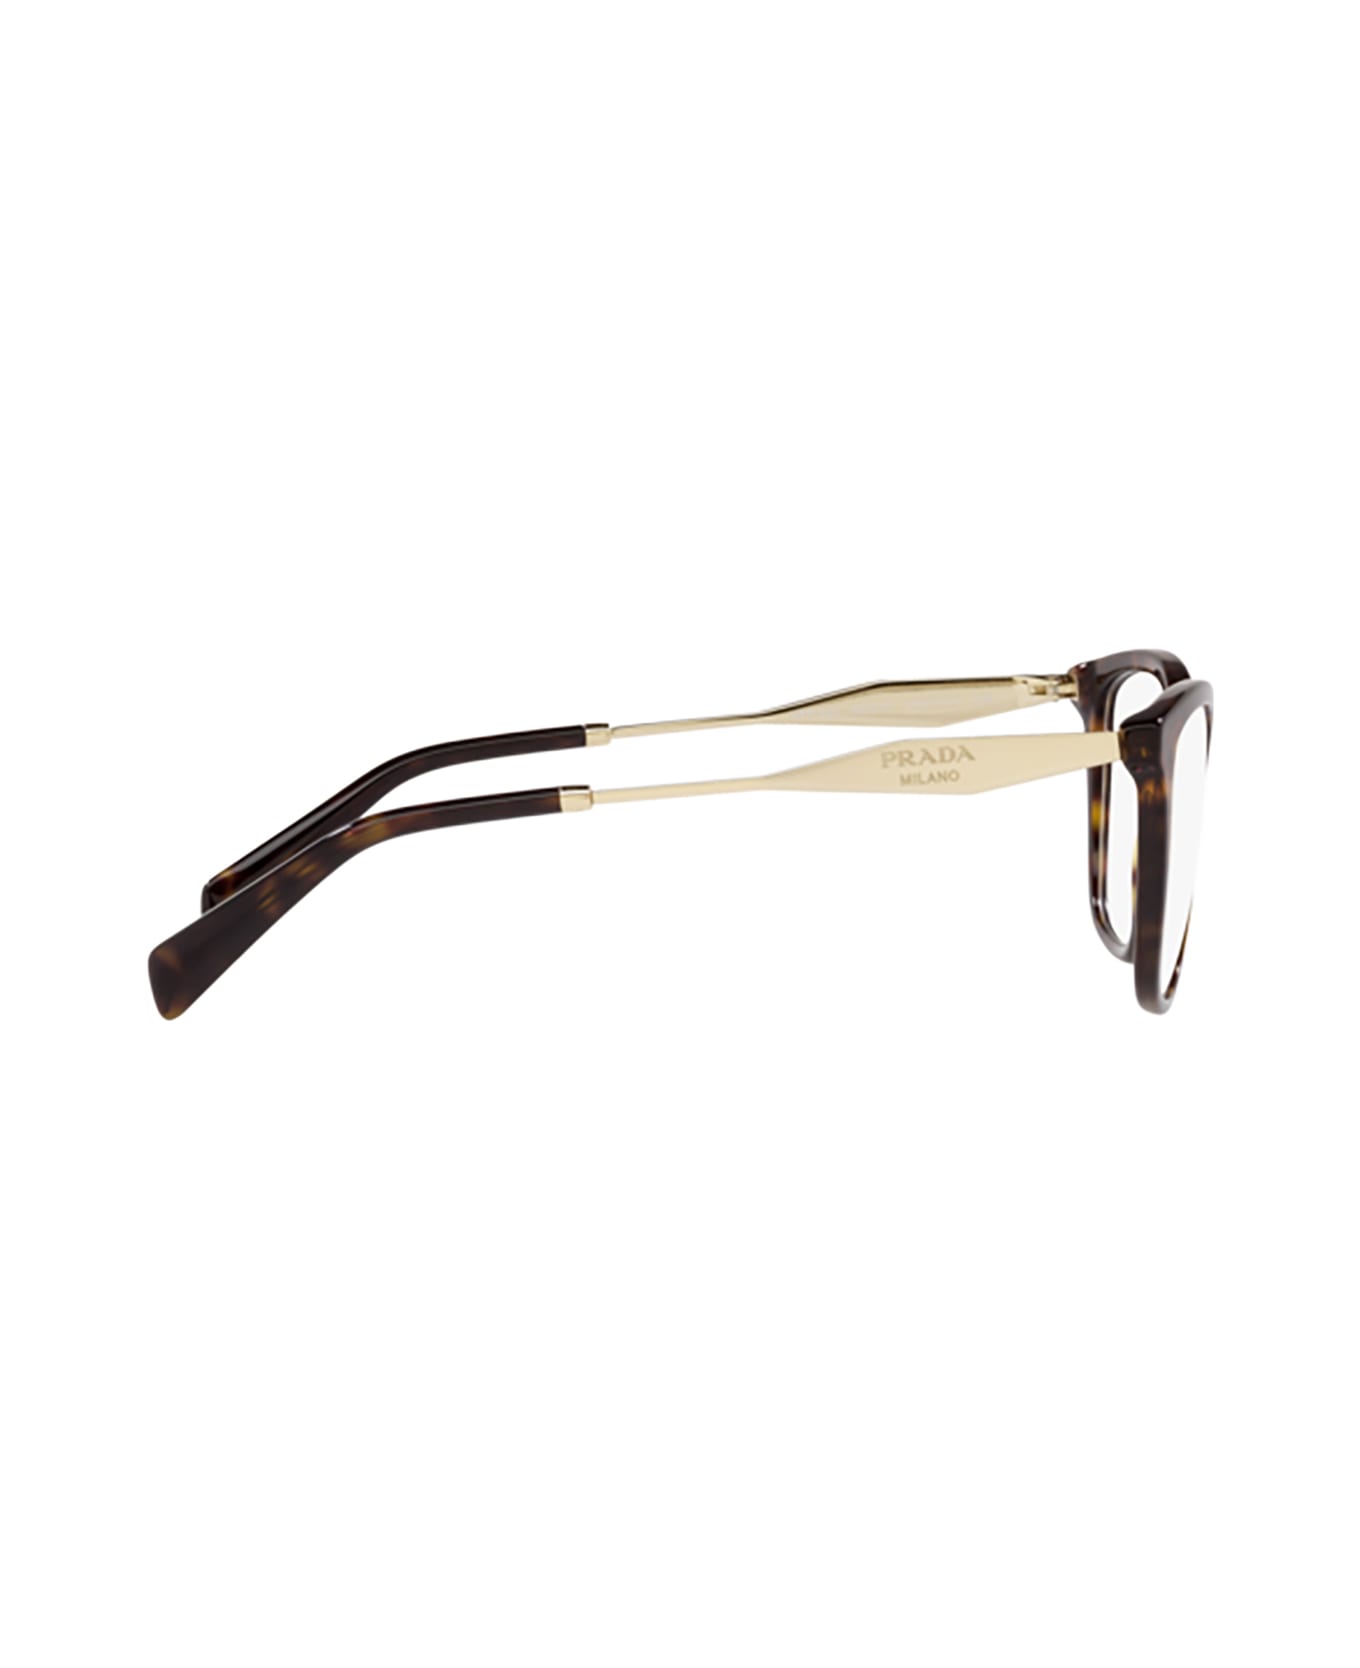 Prada Eyewear Pr 02zv Tortoise Glasses - Tortoise